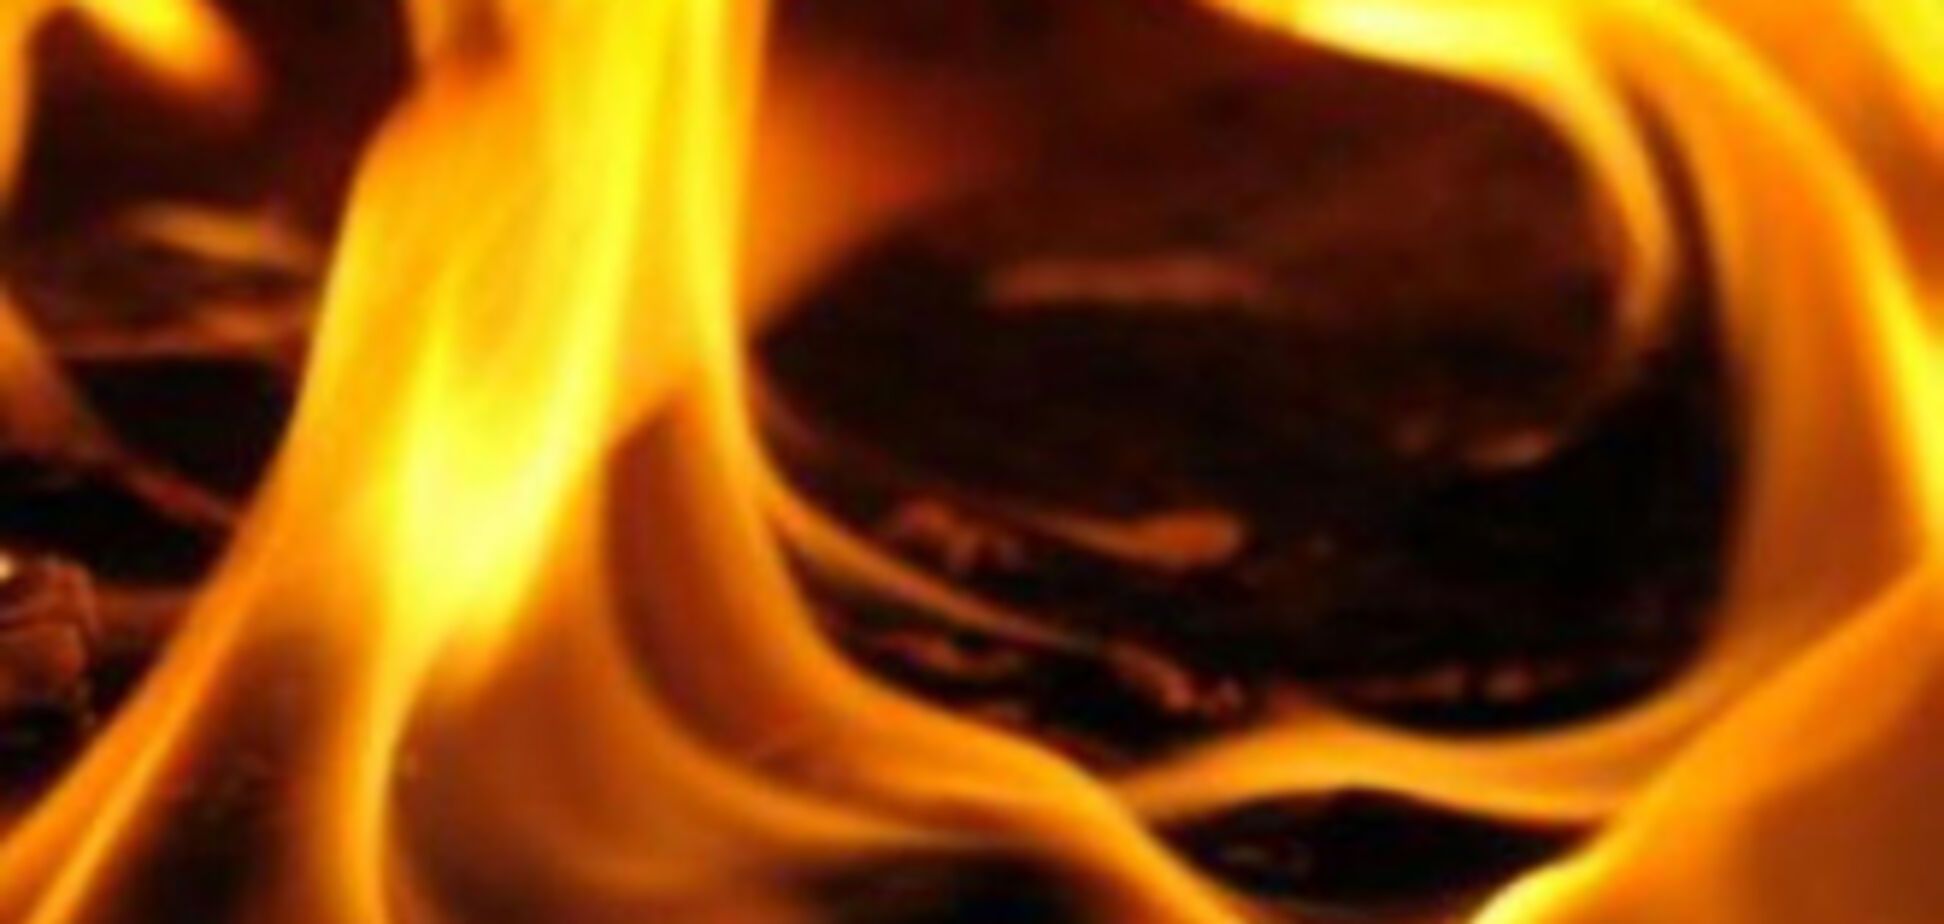 На Ривненщине в сельской хате сгорели четверо детей